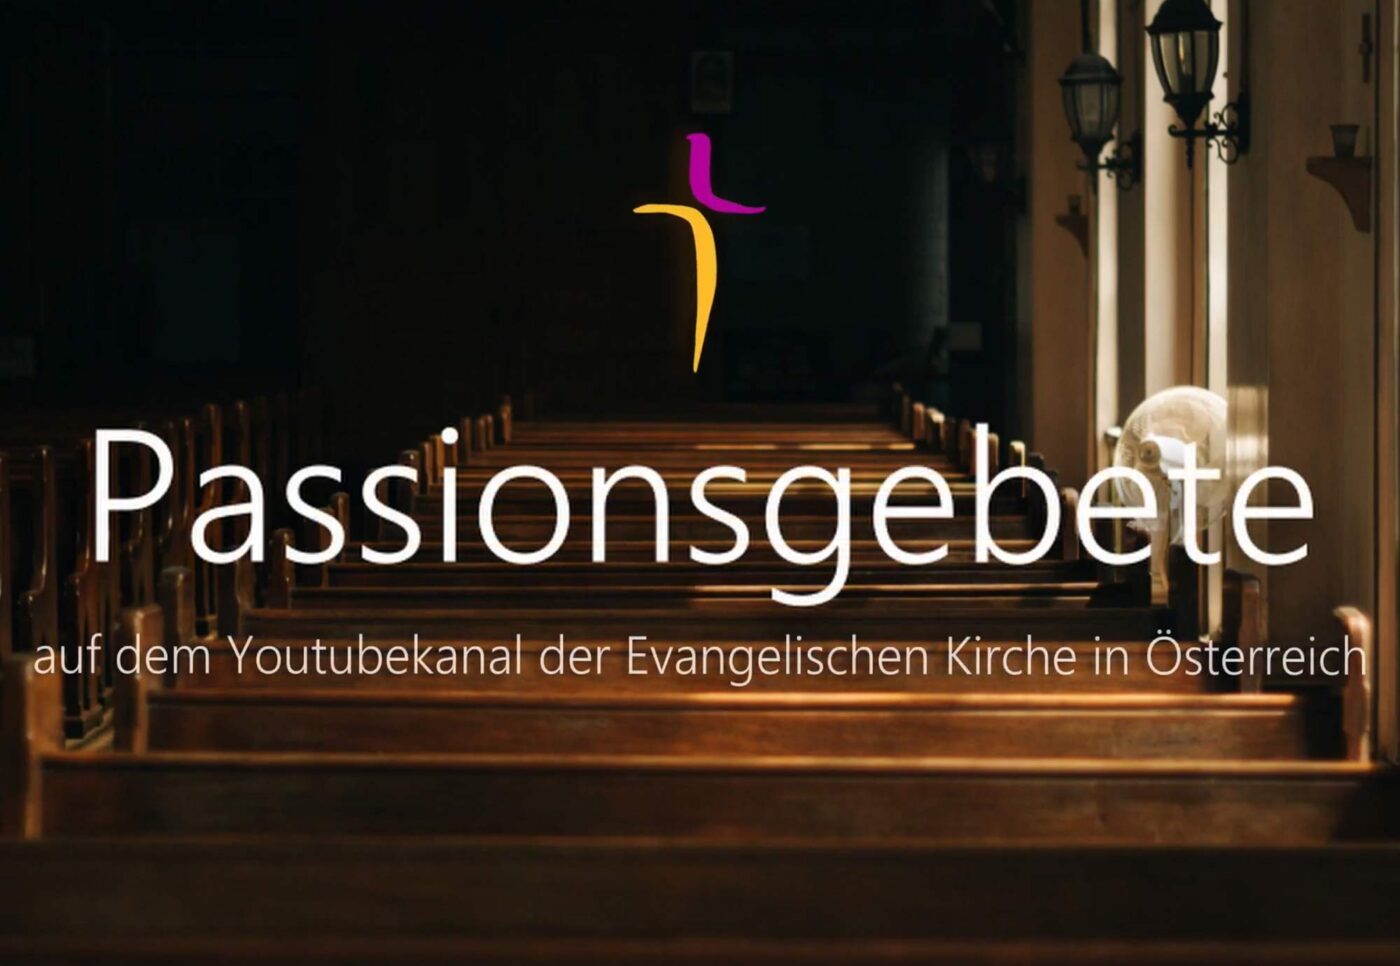 Vom Aschermittwoch bis zum Karfreitag sind die Fastenvideos und Passionsgebete zu sehen, abgeschlossen wird die Reihe mit einem Ostergebet. (Screenshot: epd)